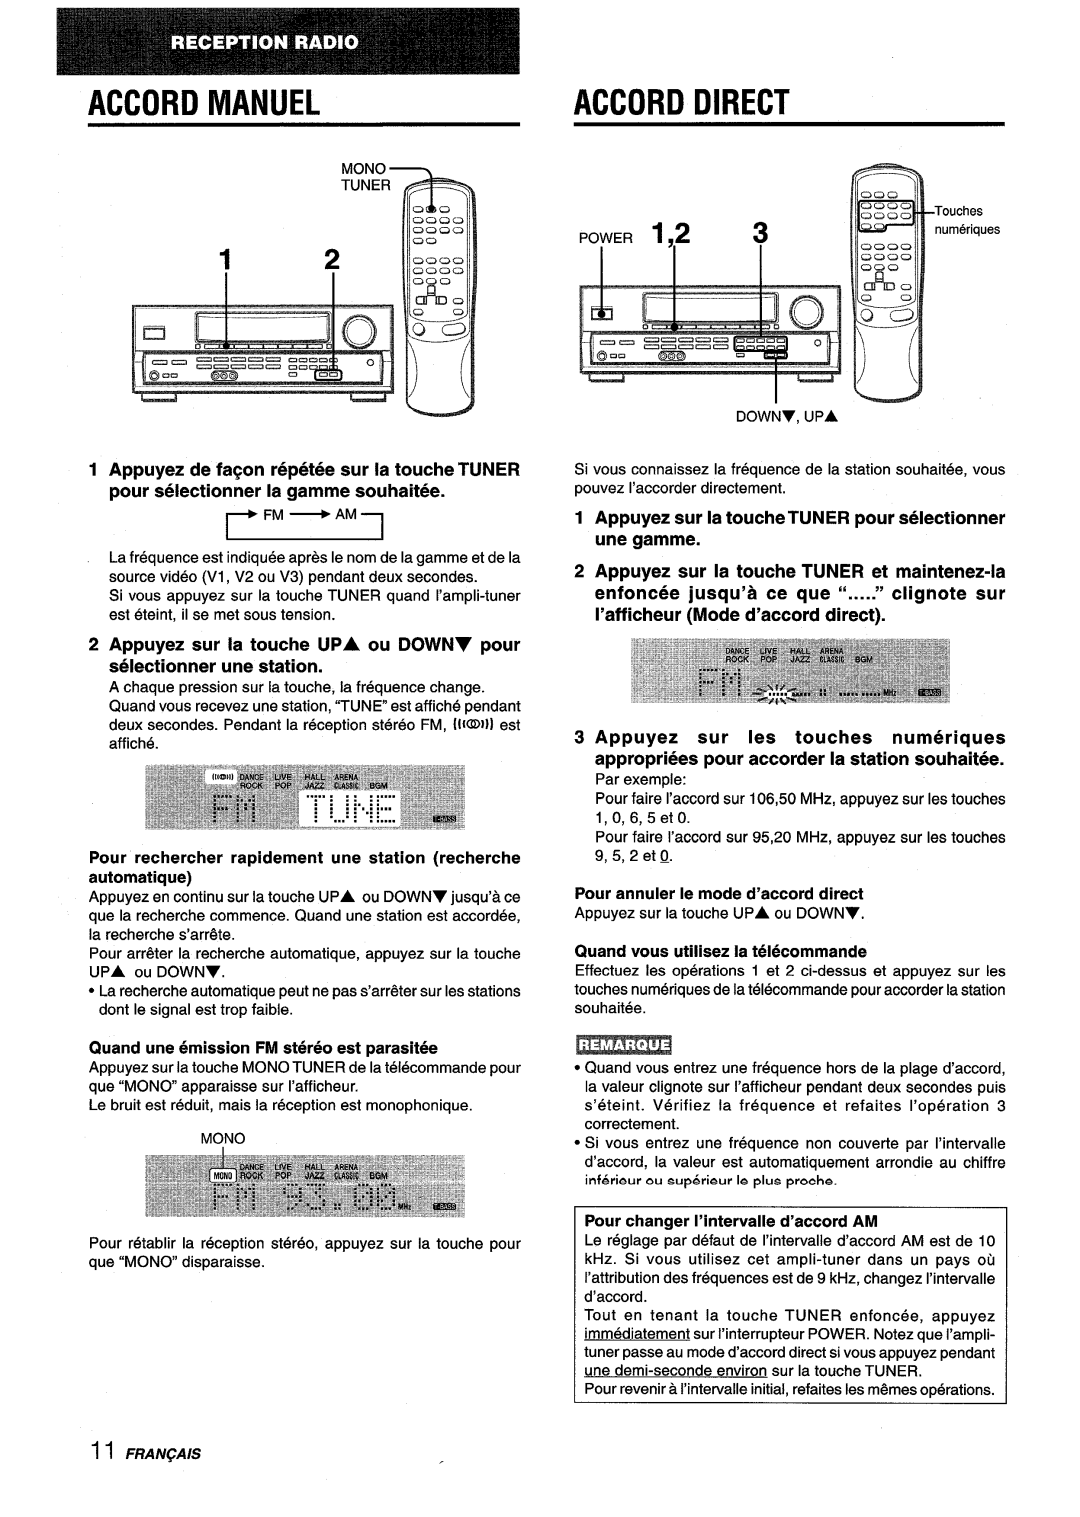 Aiwa AV-D25 manual Accord Manuel, Accord Direct, Fm ~ Am, Appuyez sur la touche UPA ou DOWNY pour selectionner une station 